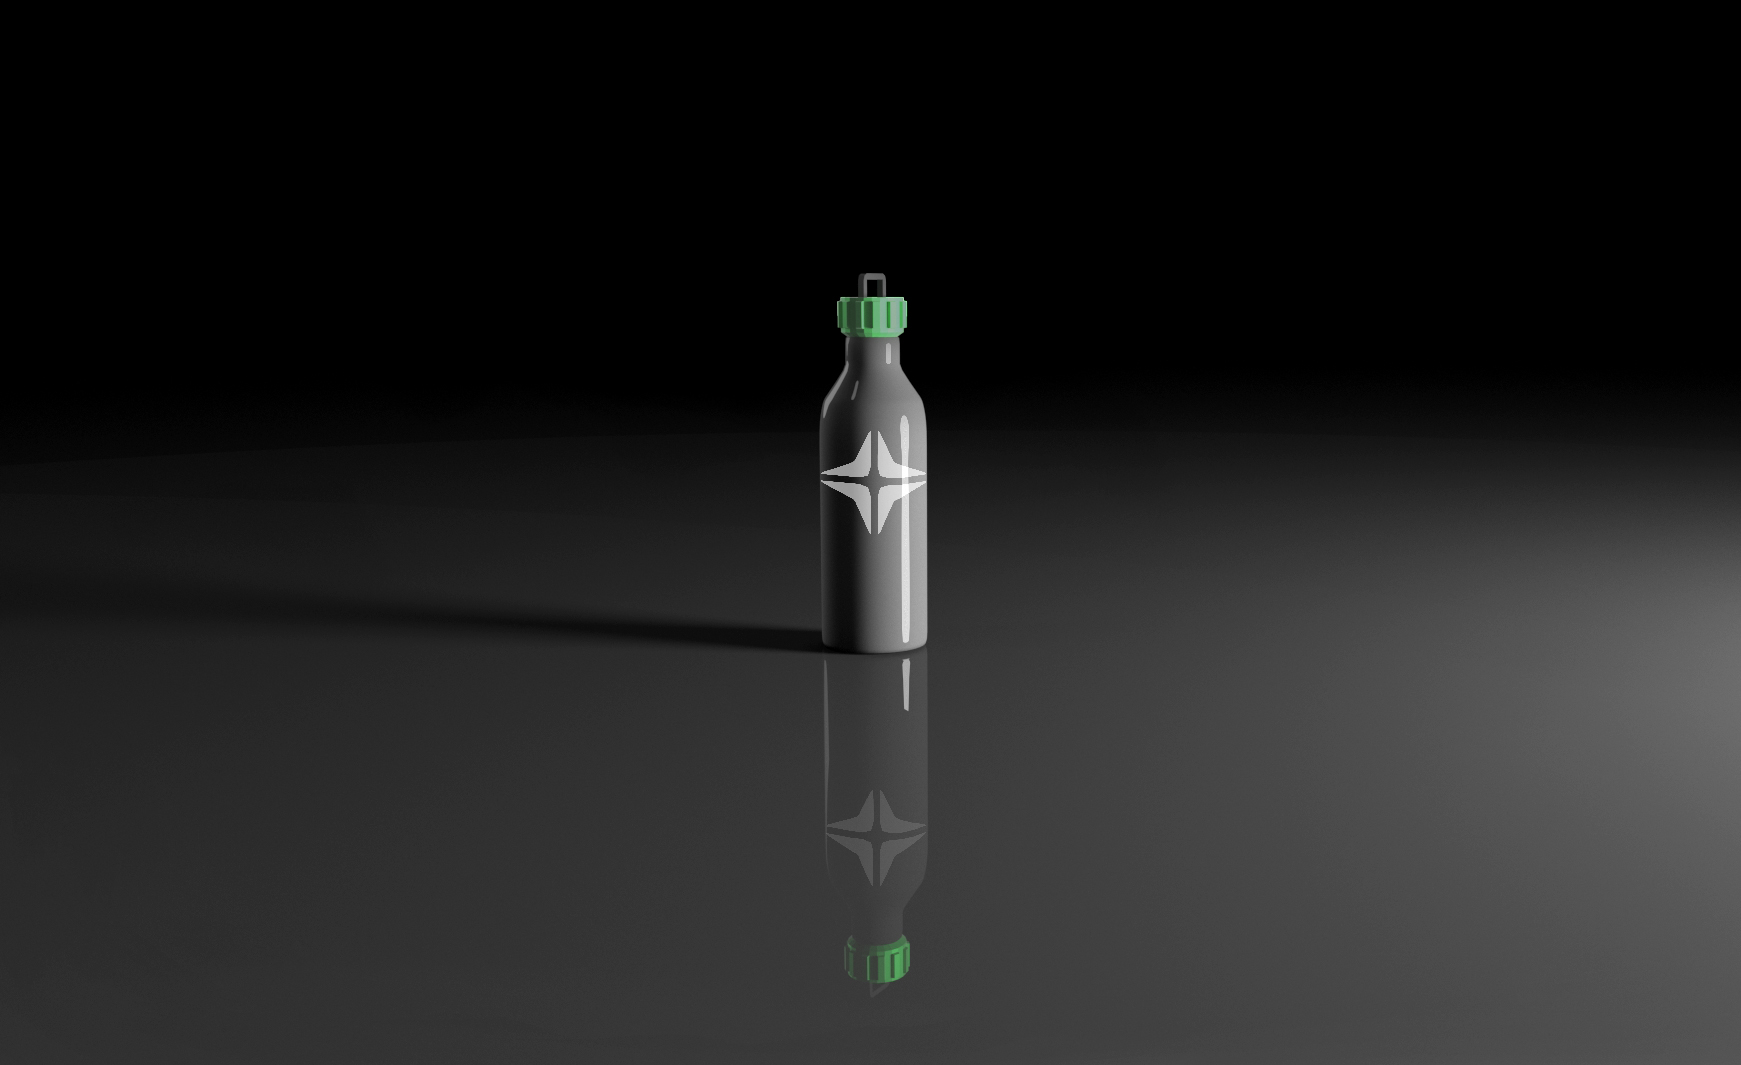 BlackStar bottle with white logo.